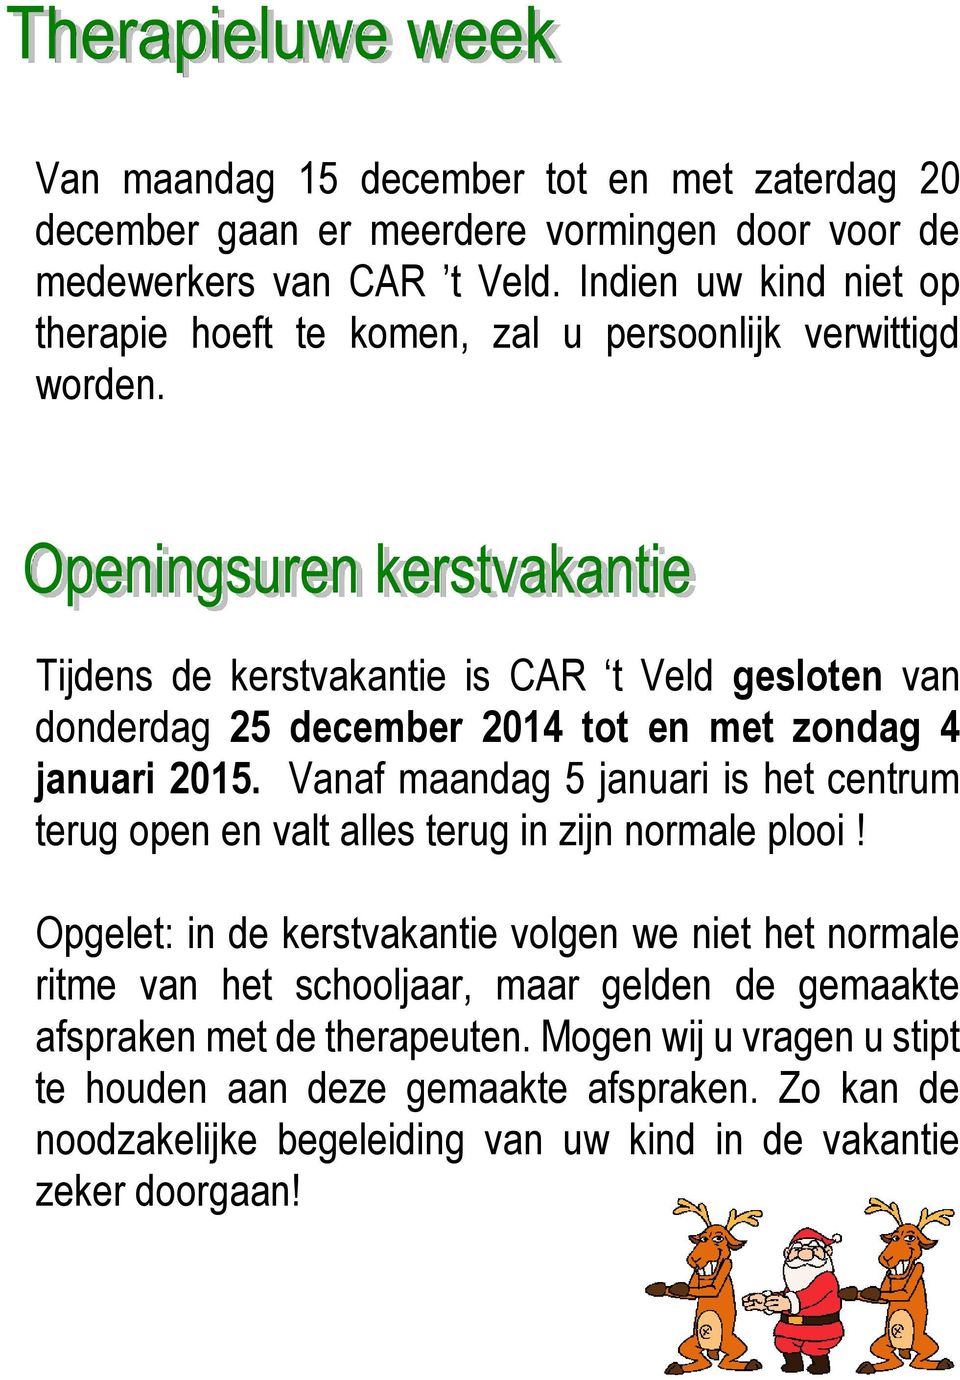 Tijdens de kerstvakantie is CAR t Veld gesloten van donderdag 25 december 2014 tot en met zondag 4 januari 2015.